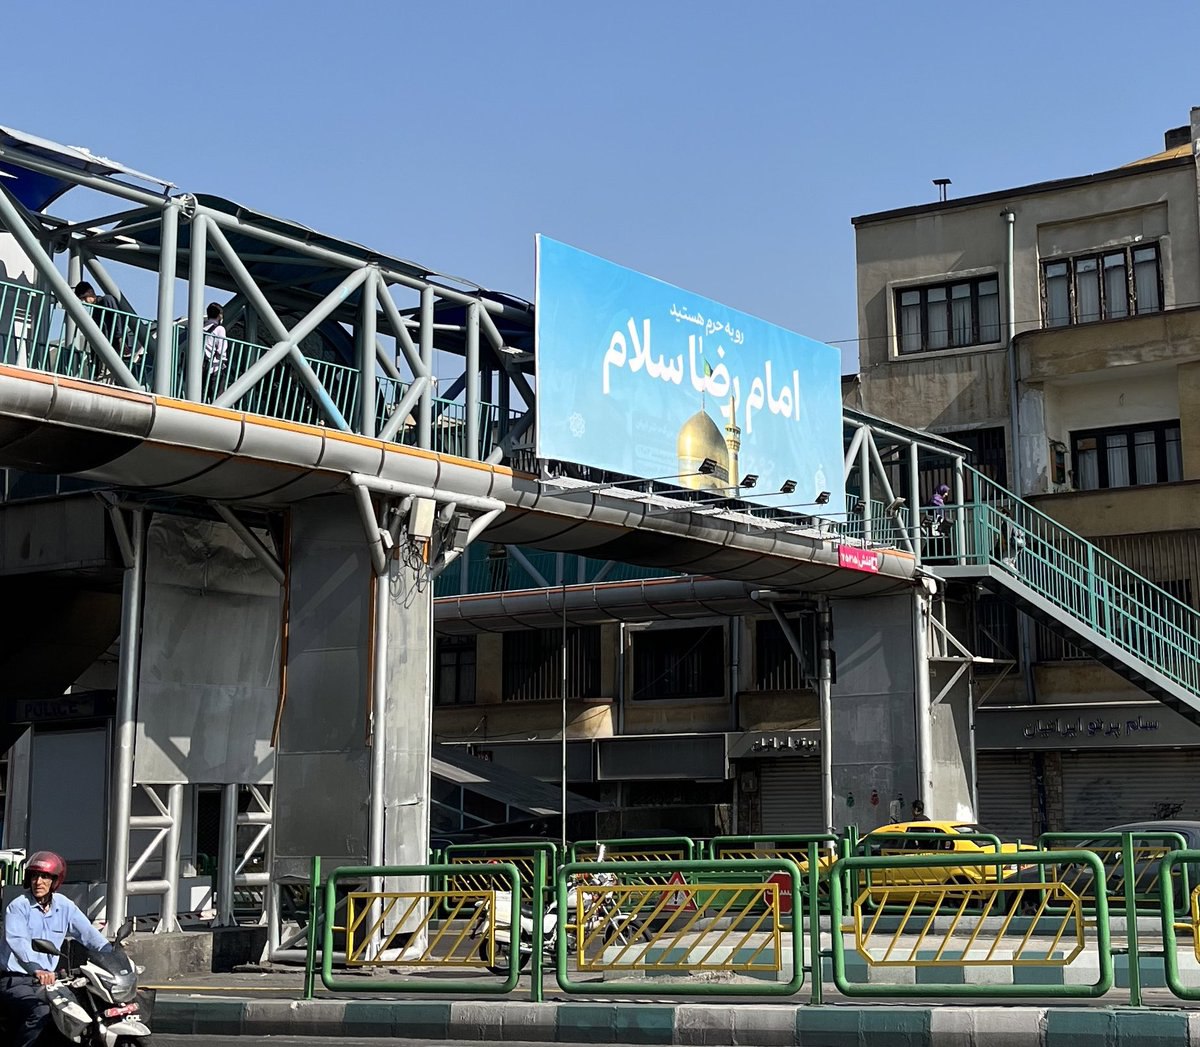 یک گاف عجیب در بنر نصب شده در تهران+عکس